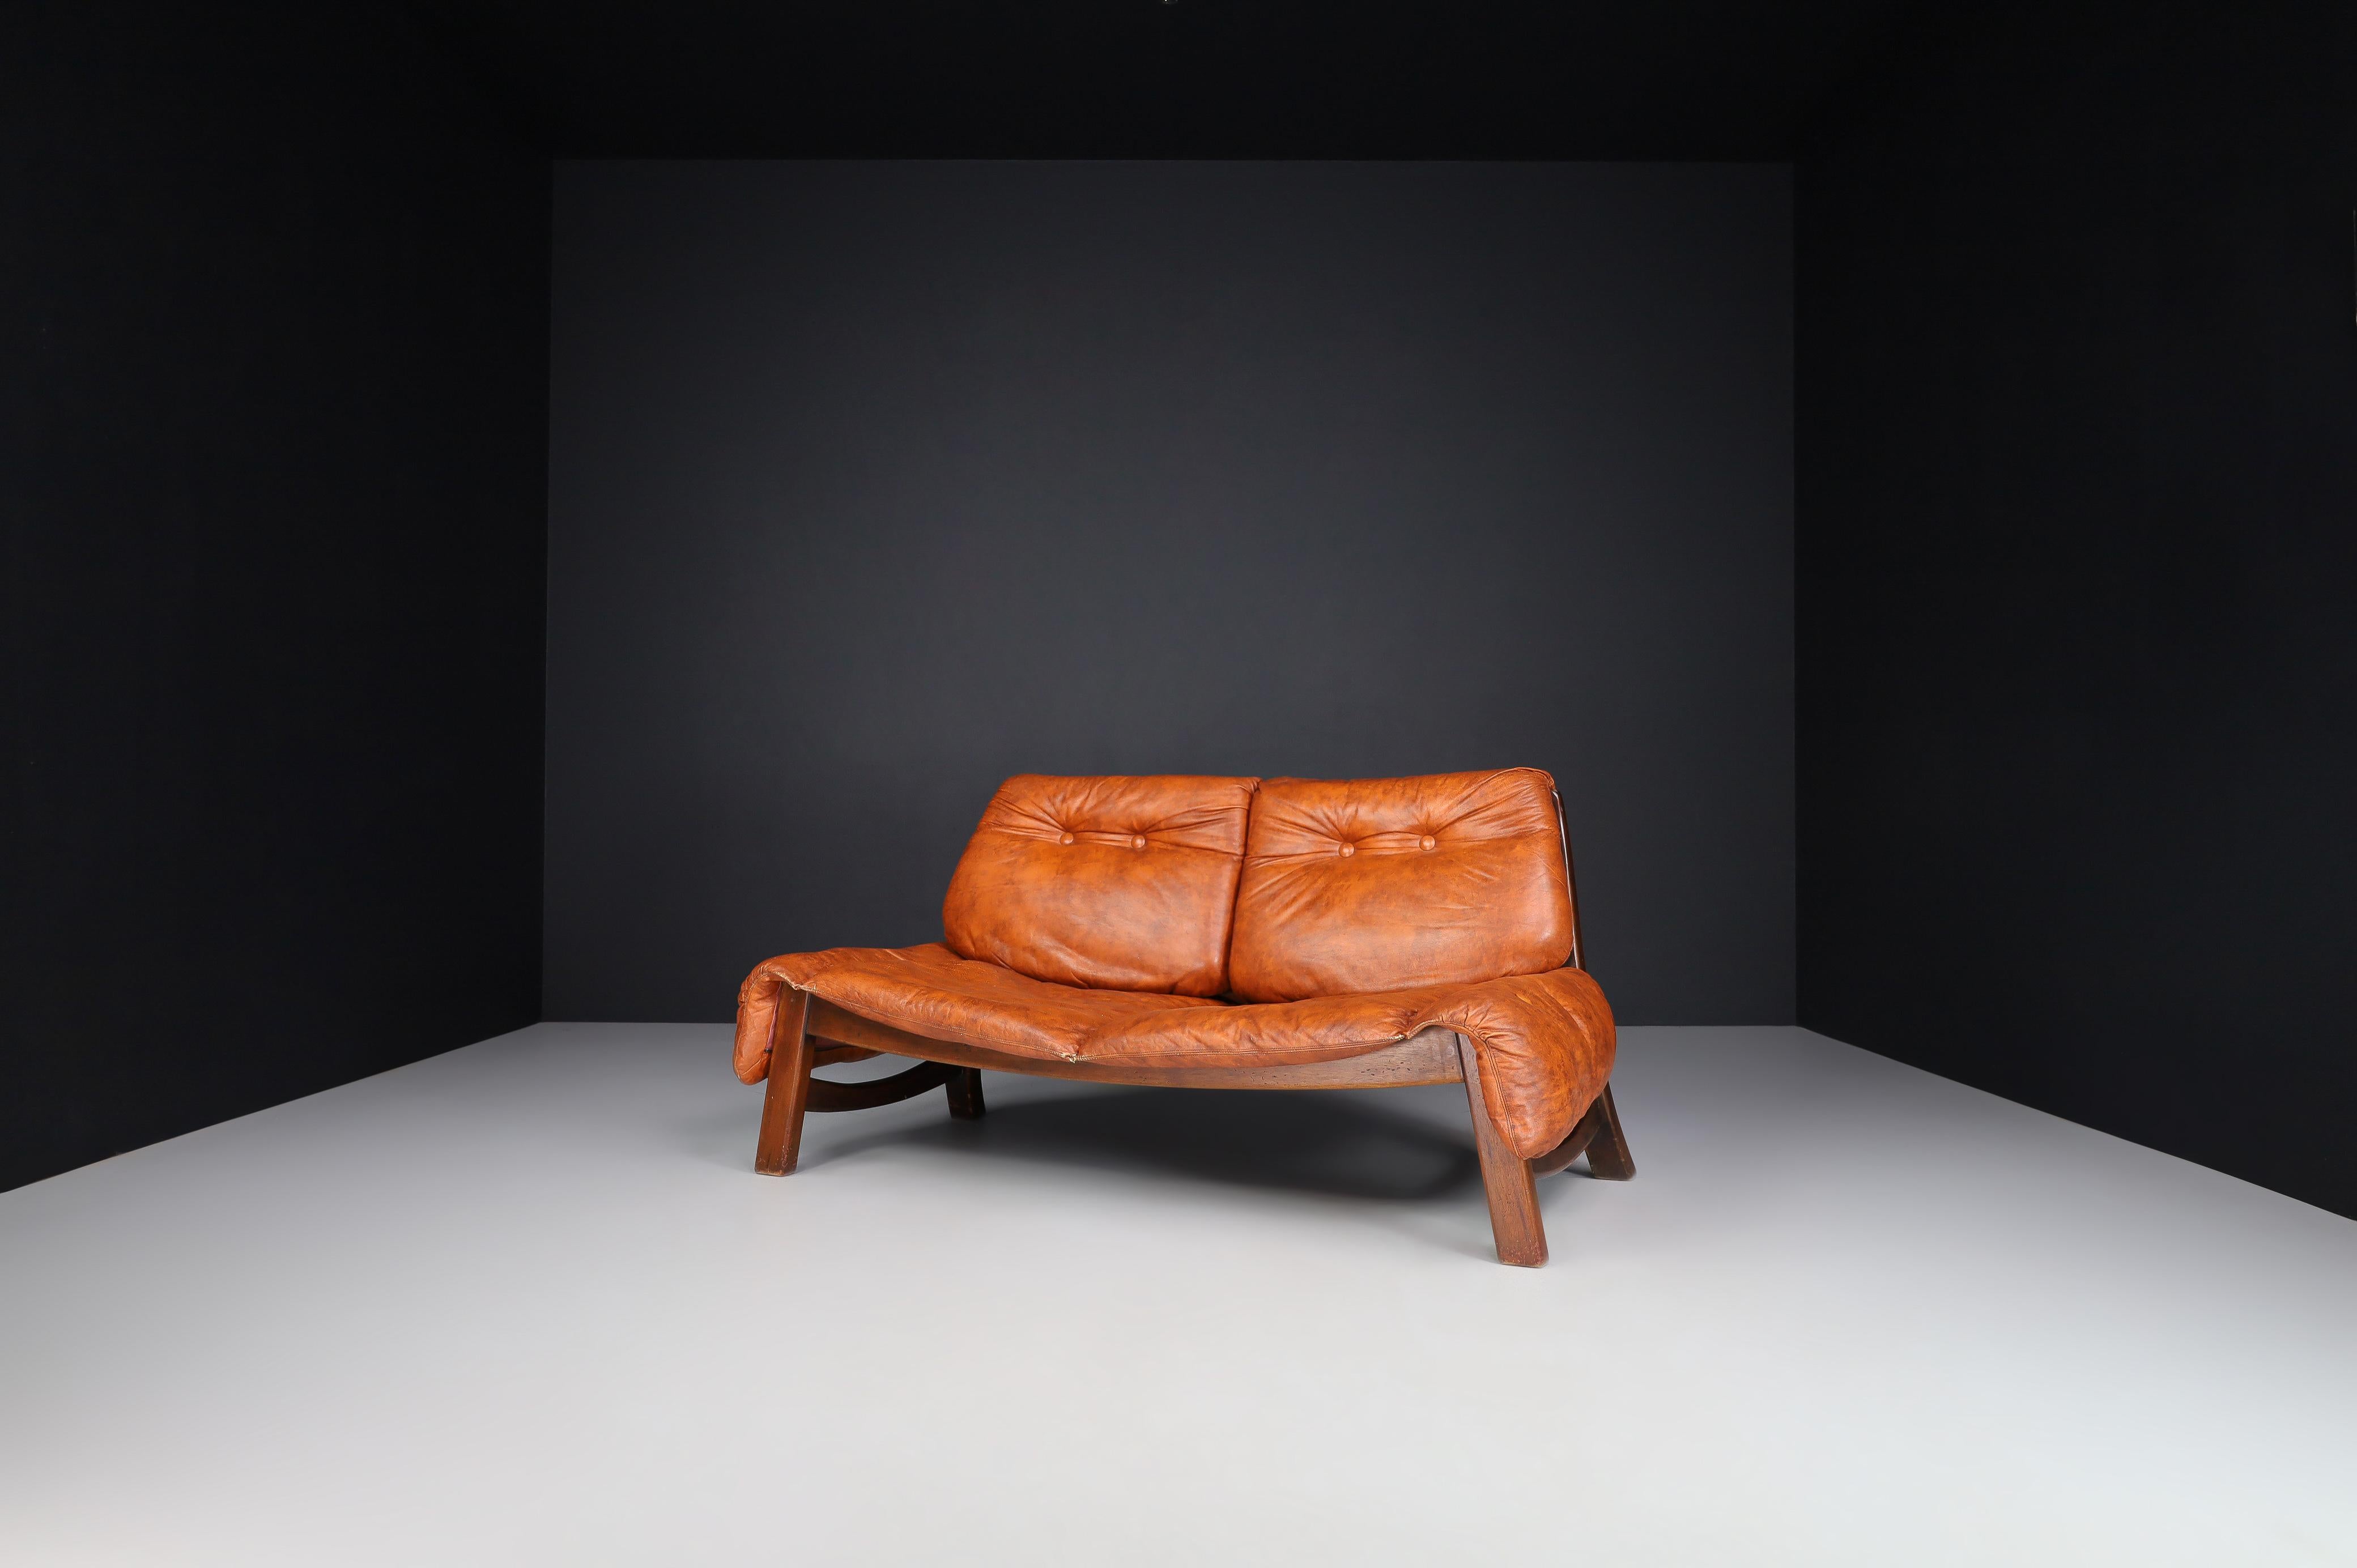 Canapé Lounge italien en cuir fin et Wood Wood, Italie 1970

Ce canapé de salon italien surdimensionné des années 1970 est fabriqué en bois de noyer massif et en cuir fin. Ce canapé présente un design élégant qui combine ces deux éléments et est